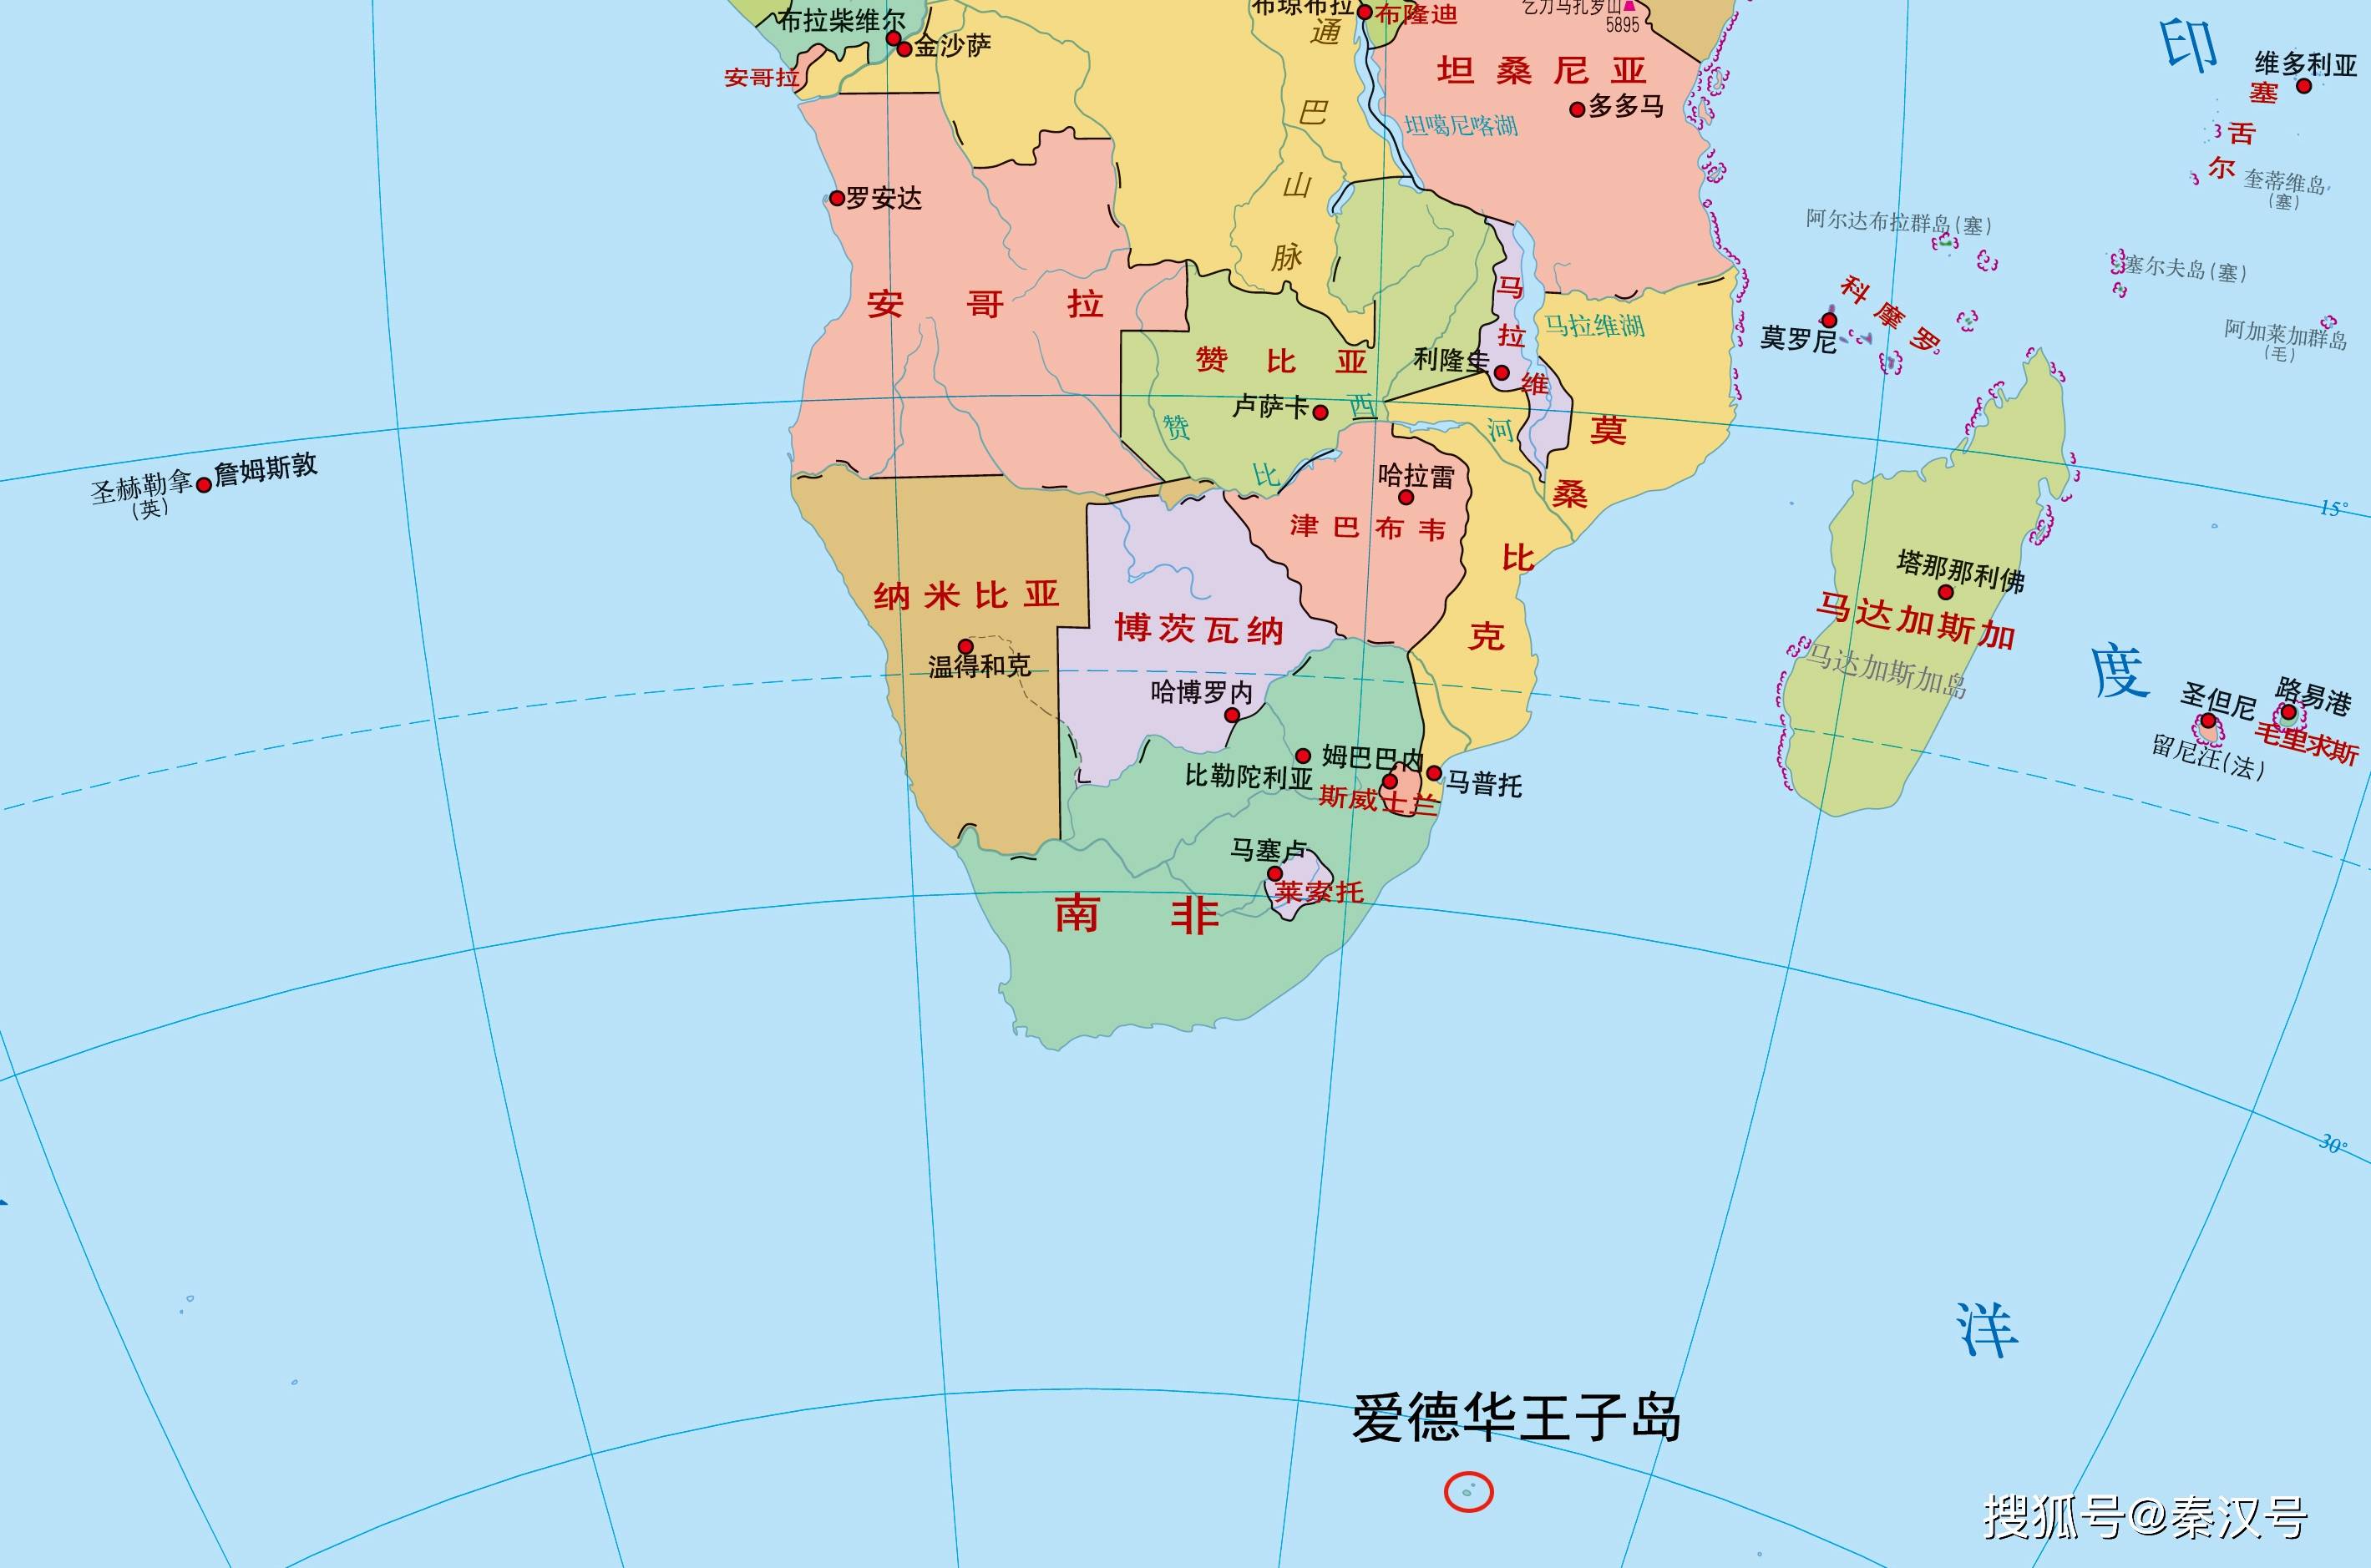 南非在地图上的位置图片